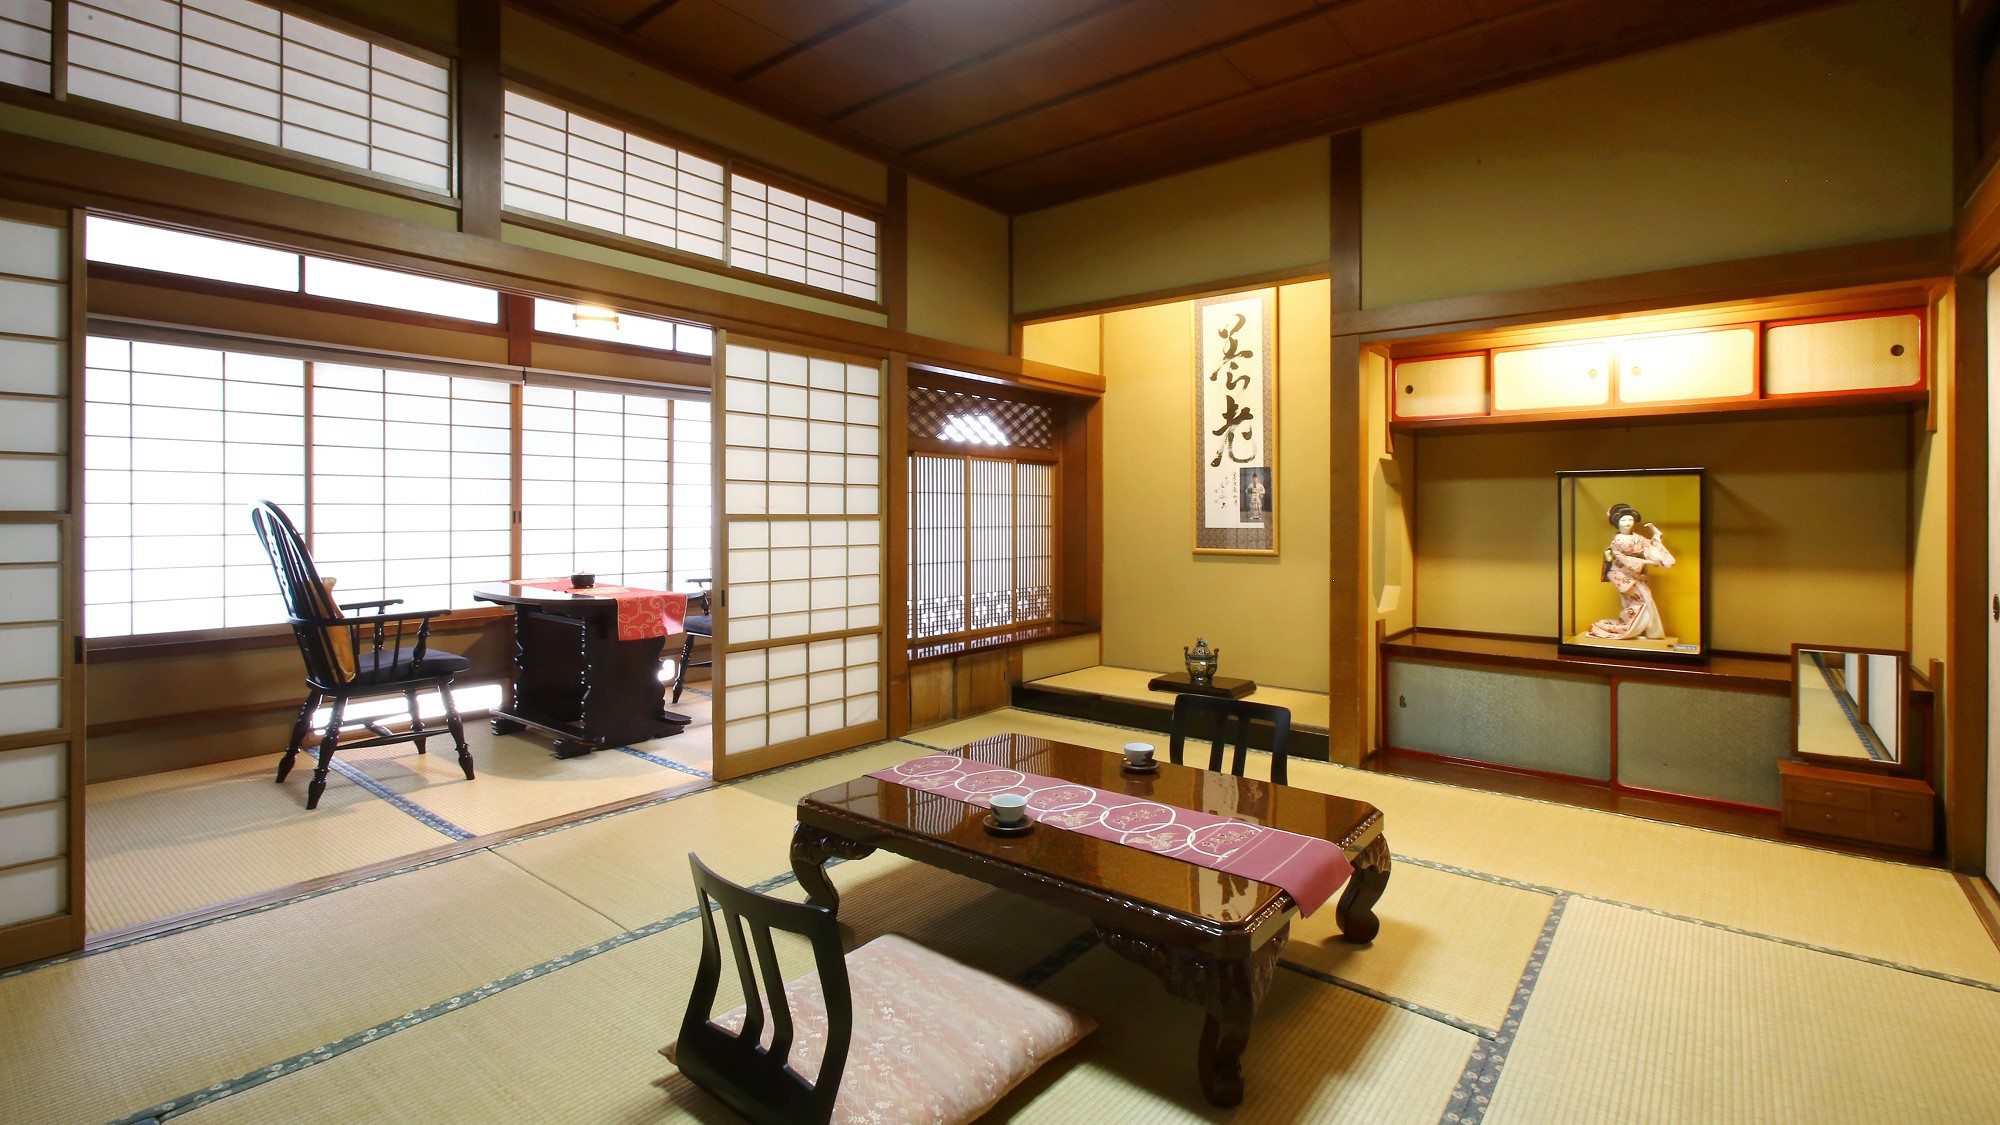 【瑠璃】木曽川を望む、檜造りの和室。木曽檜で造られた和室。